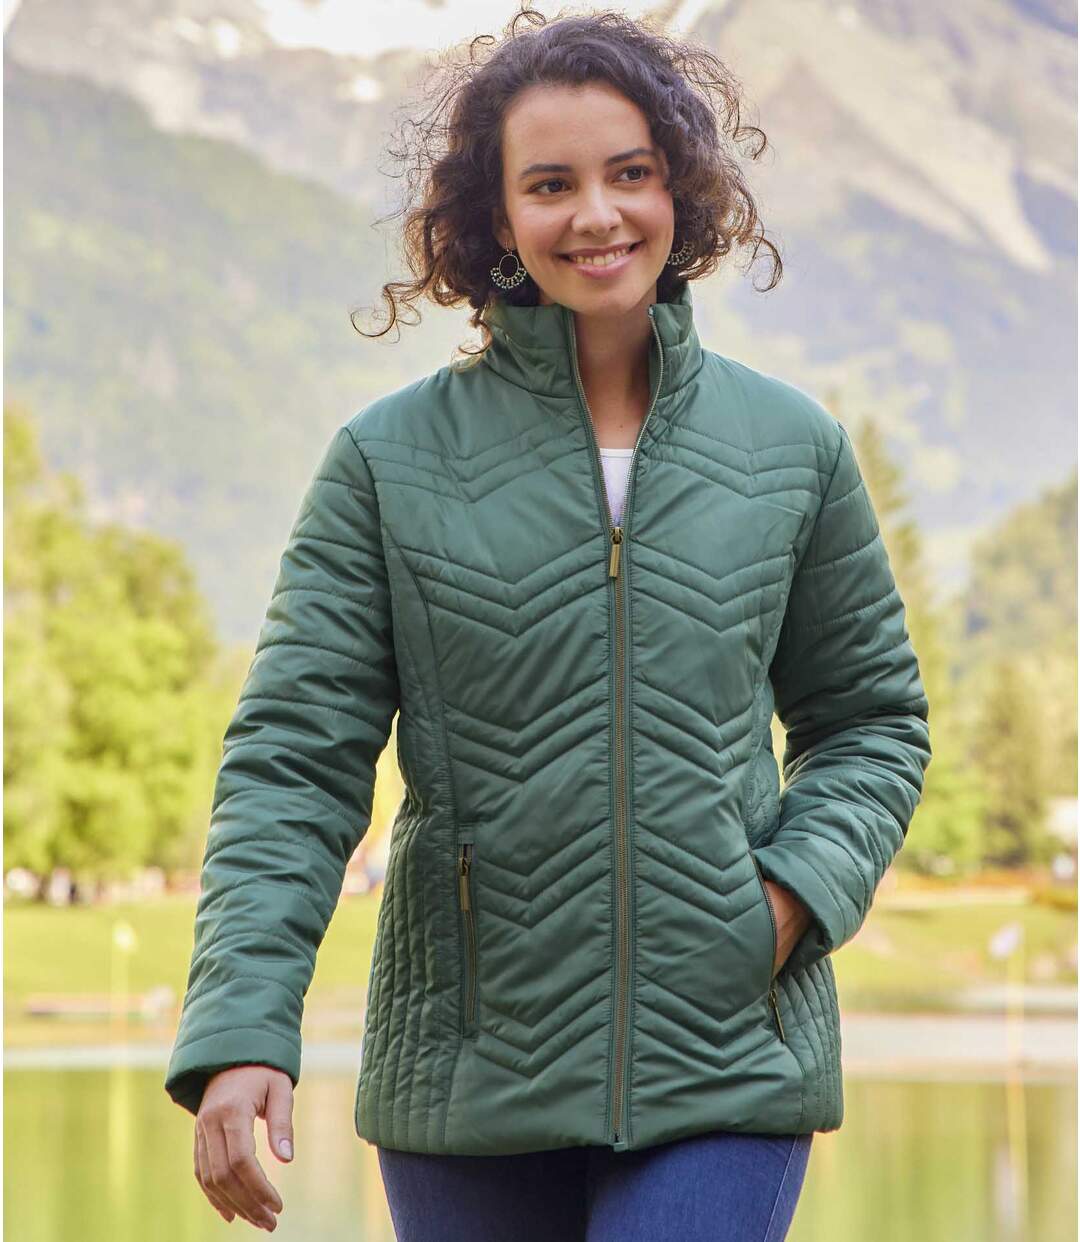 Women's Green Full Zip Padded Jacket Atlas For Men